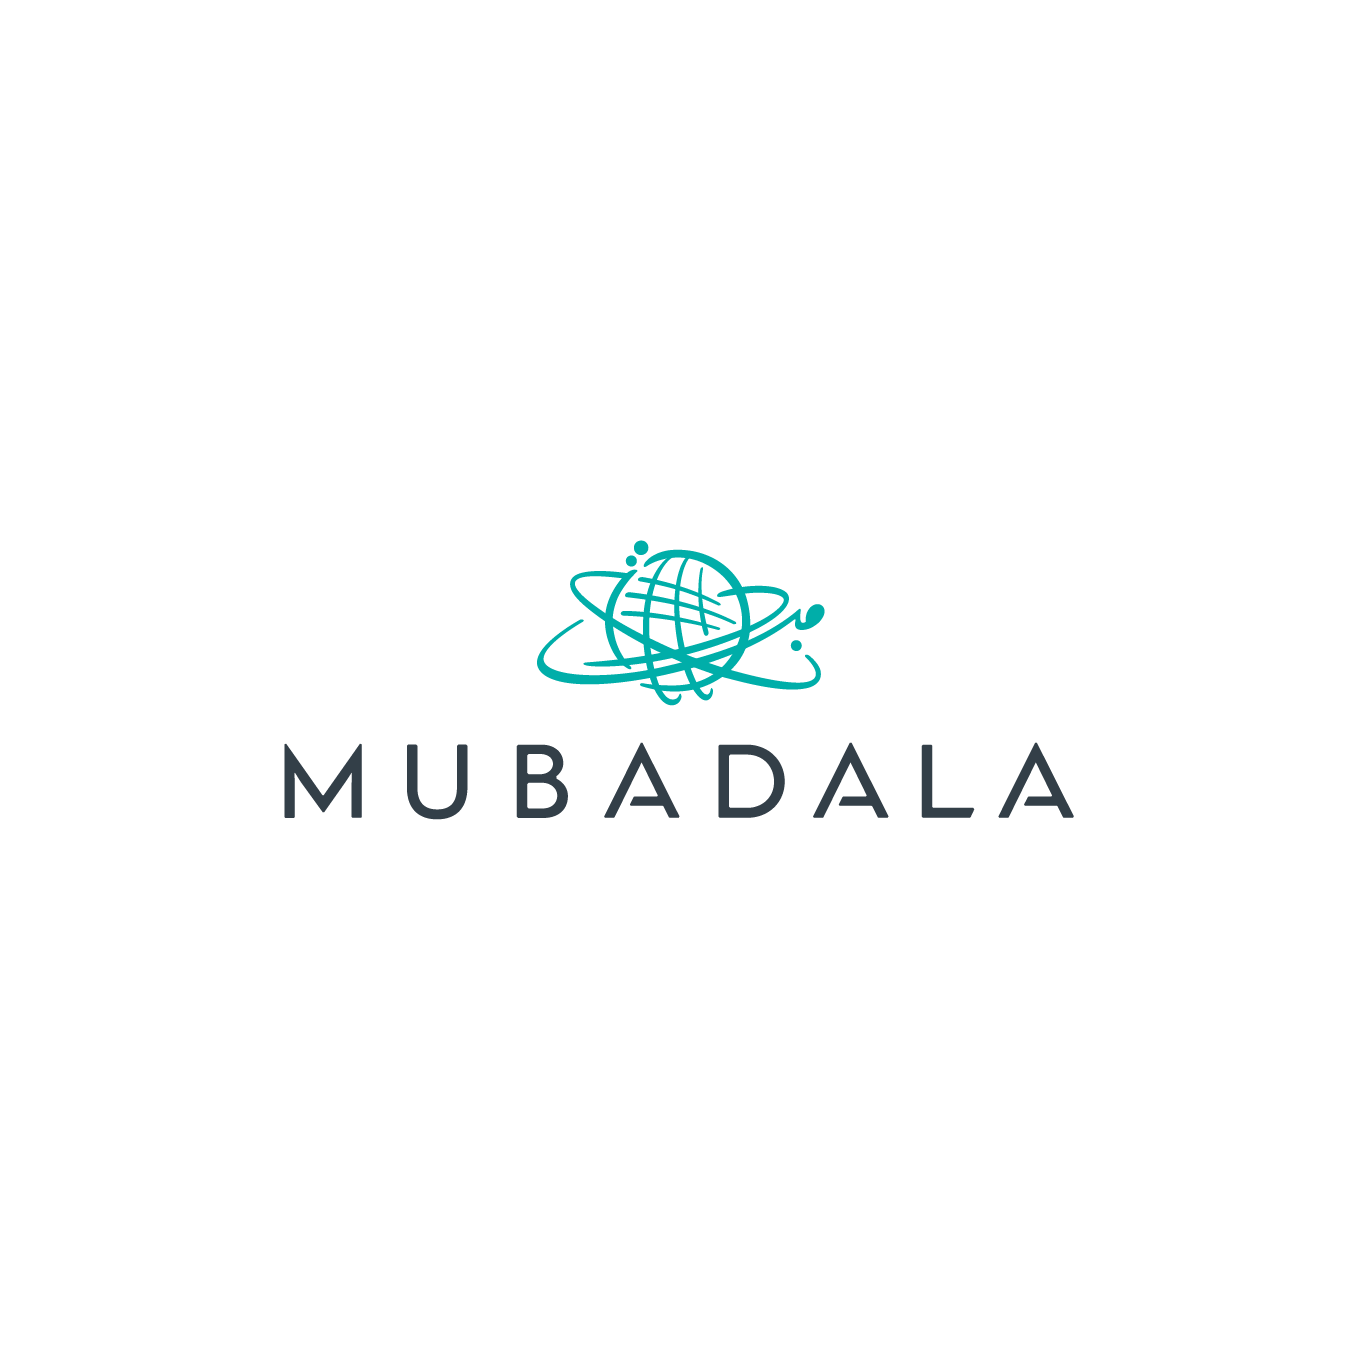 Mubadala